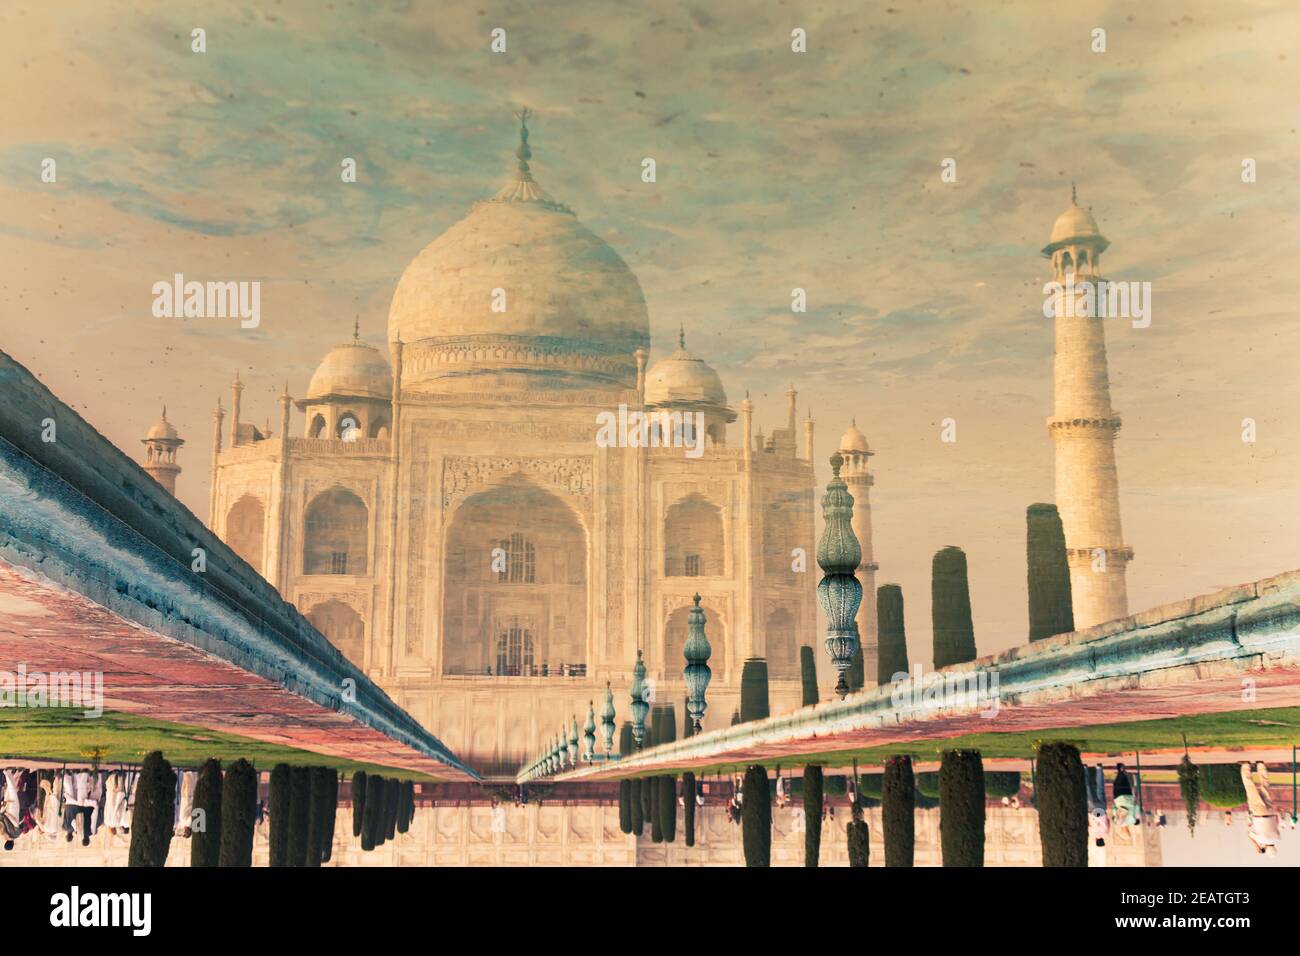 Dreamy Taj Mahal as seen in reflecting pool Stock Photo